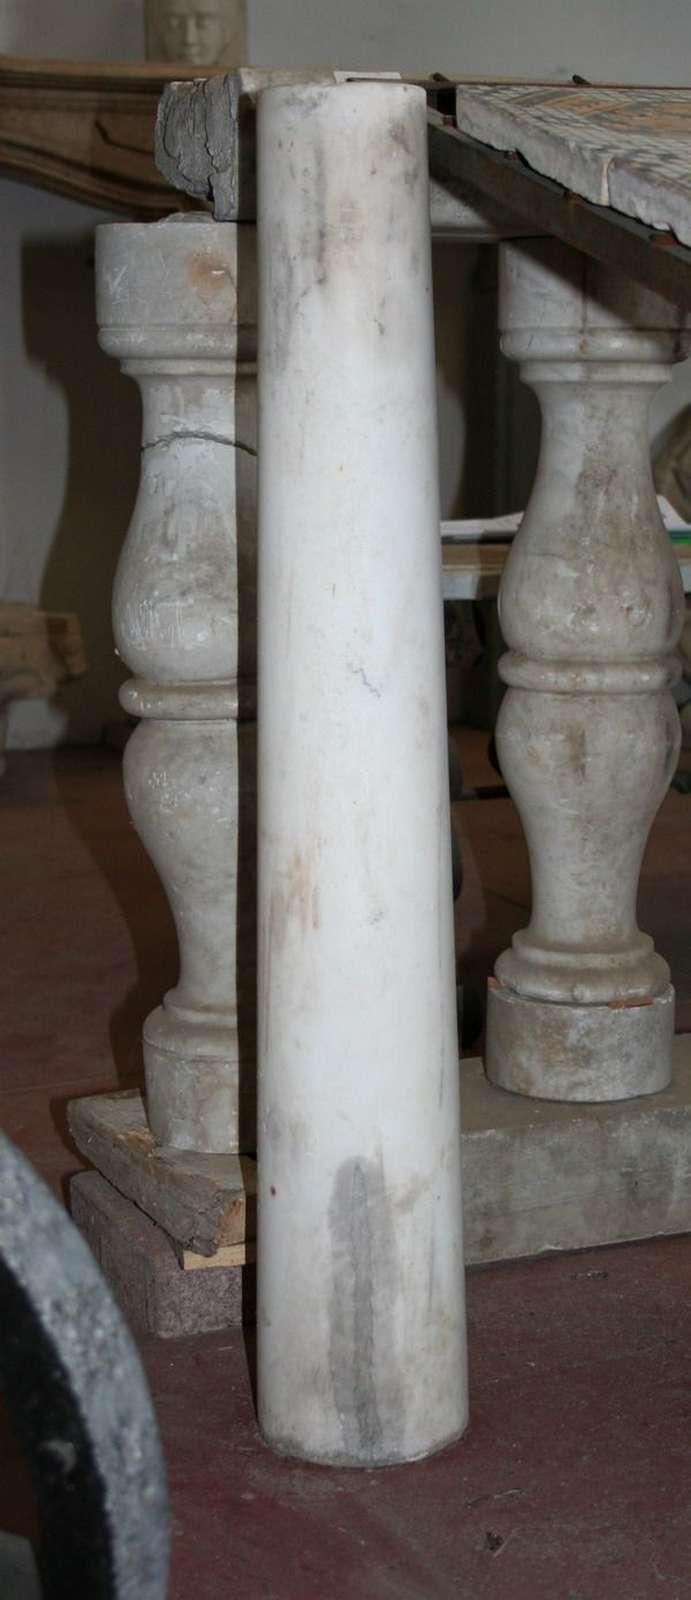 Colonna in marmo - Colonne antiche - Architettura - Prodotti - Antichità Fiorillo